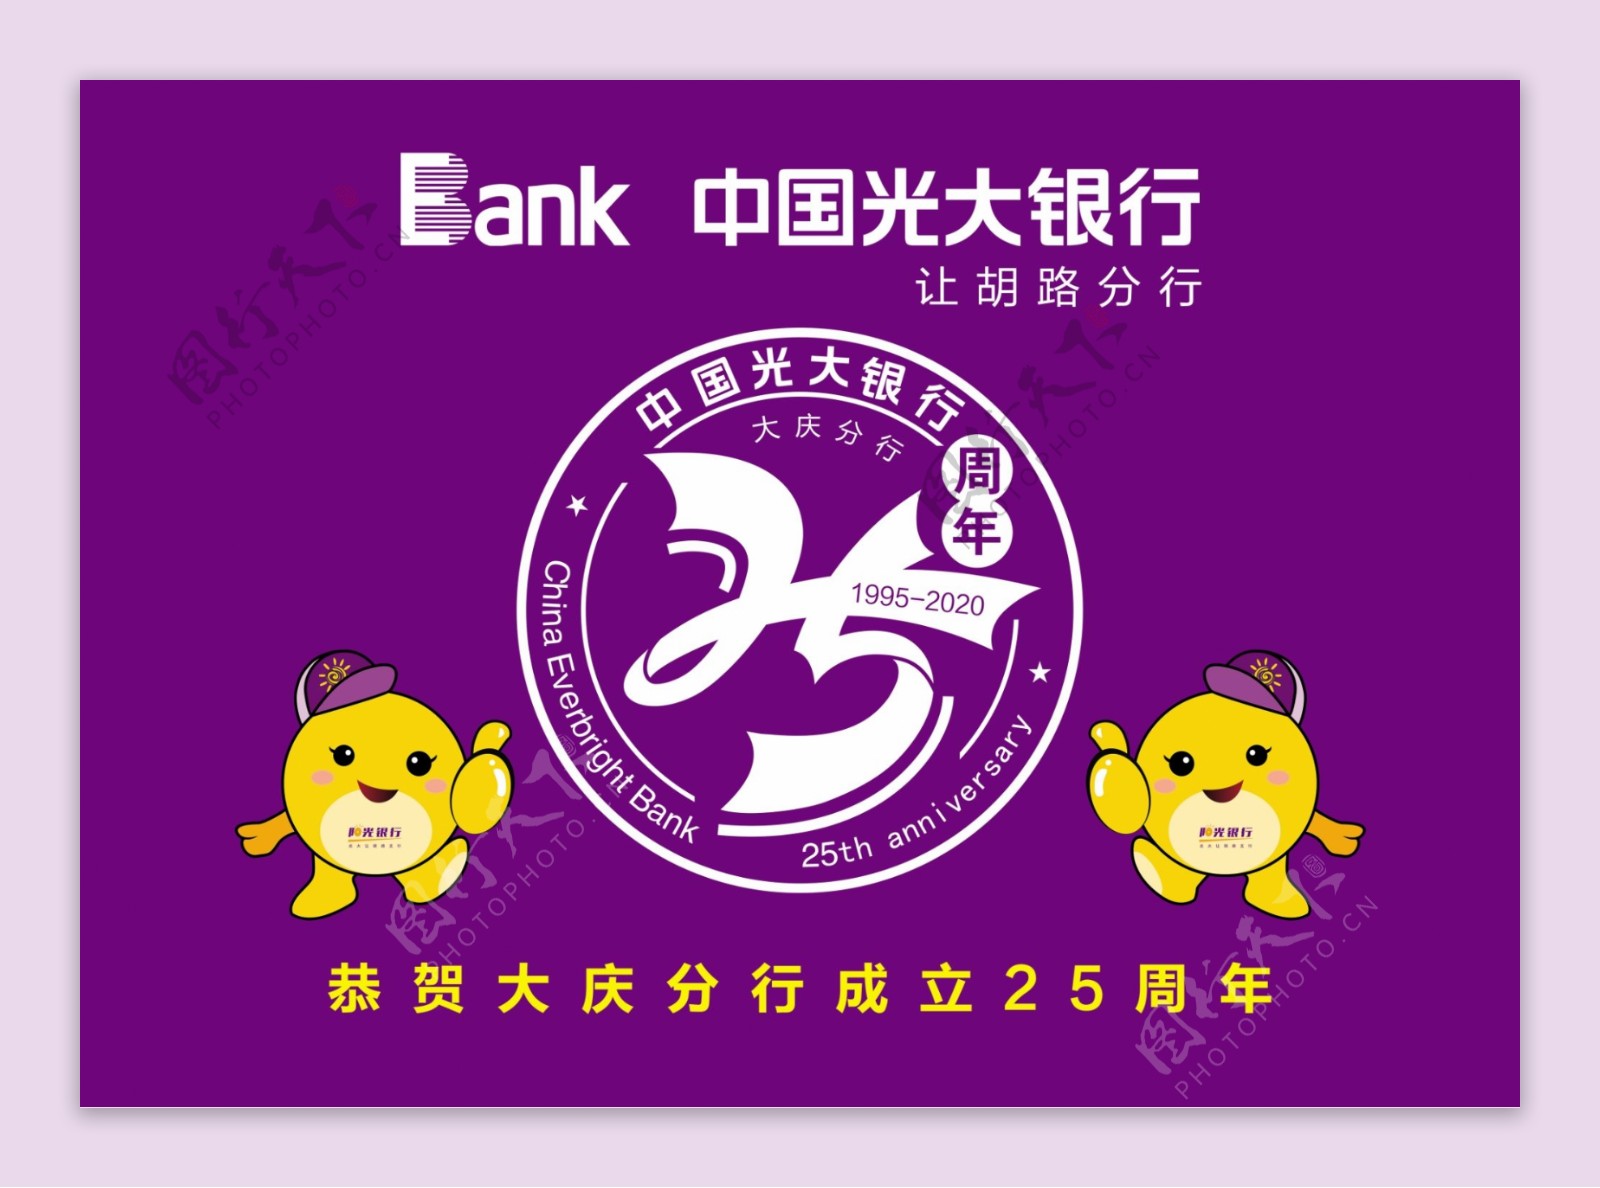 光大银行二十五周年车旗原标